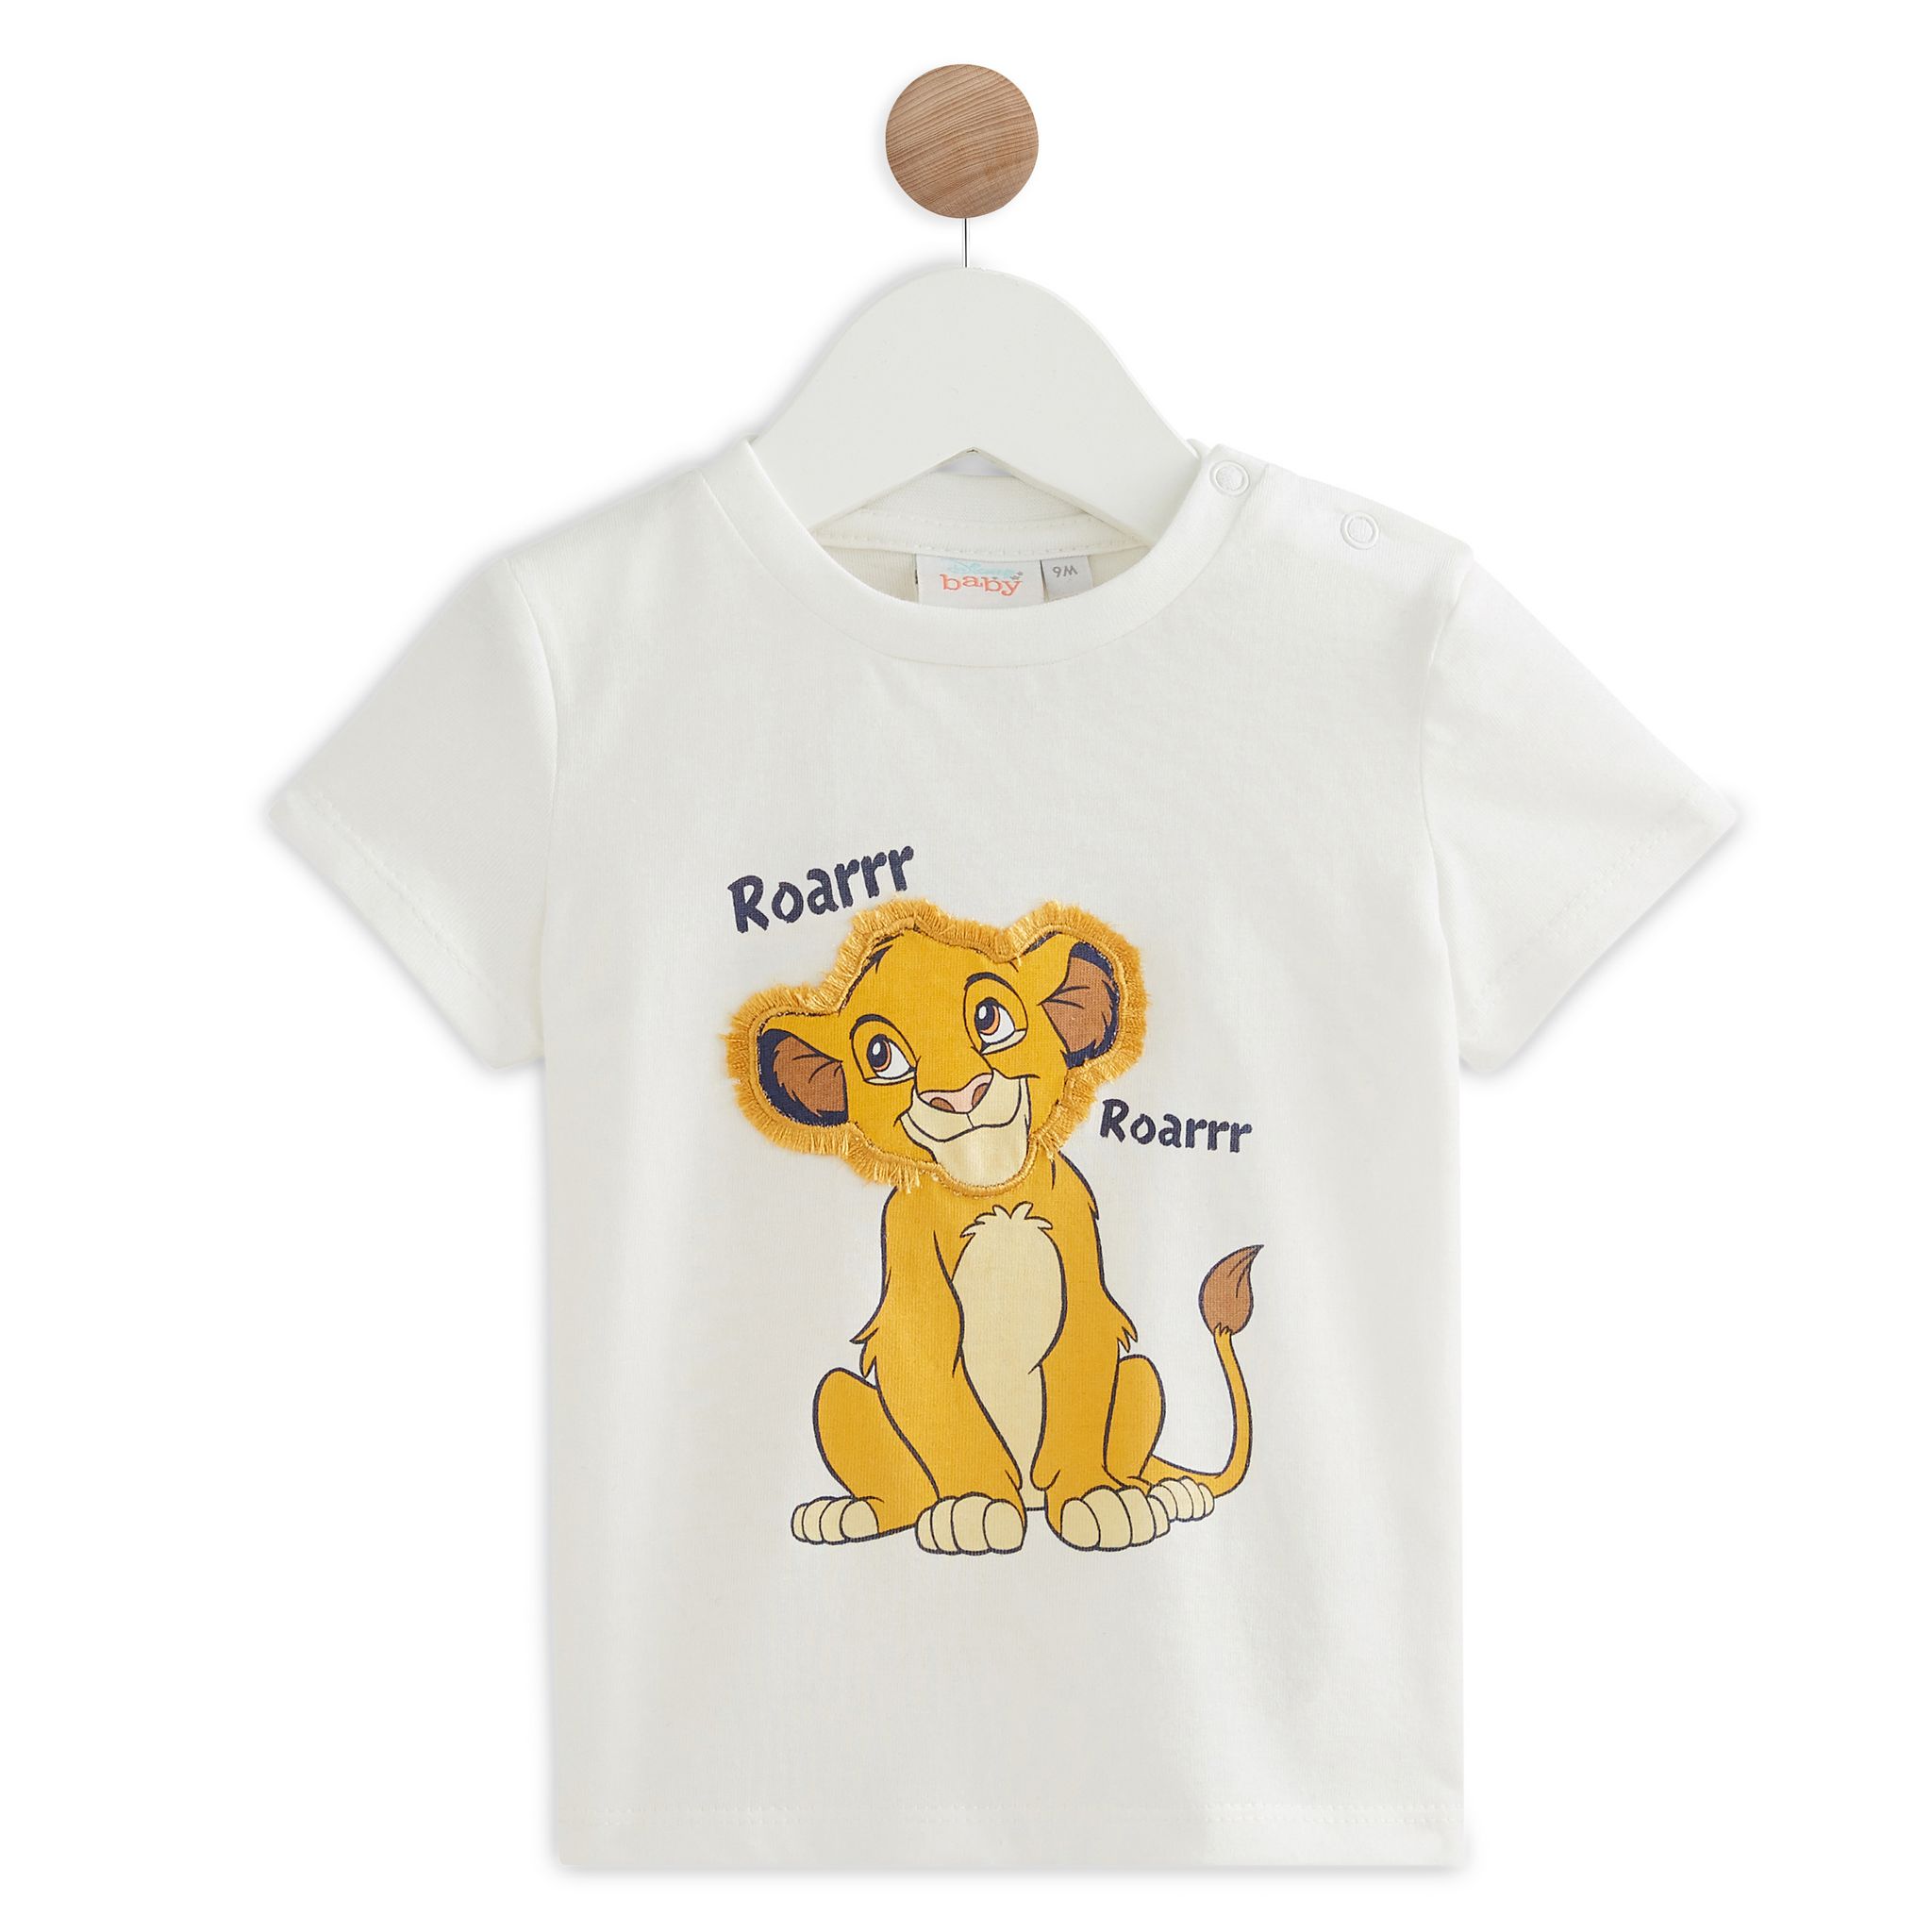 INEXTENSO T-shirt manches longues bleu bébé garçon LE ROI LION pas cher 